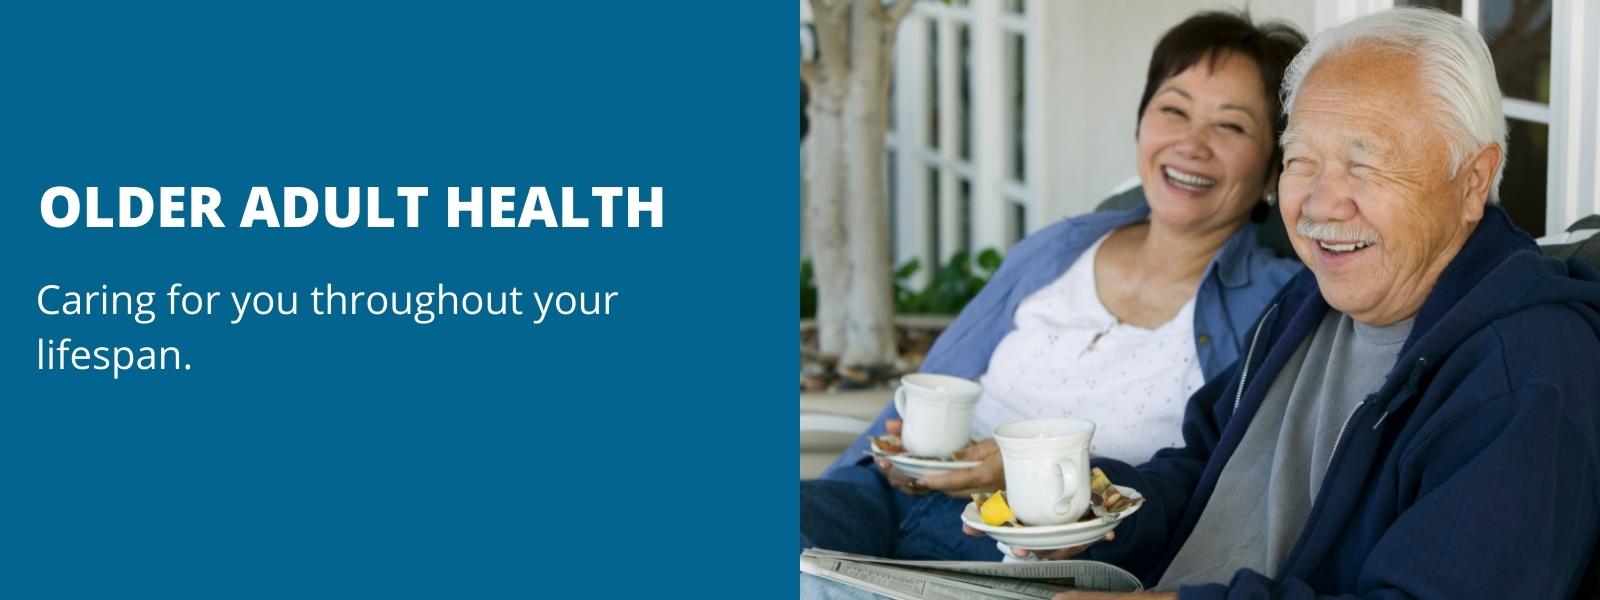 Older Adult Health Banner